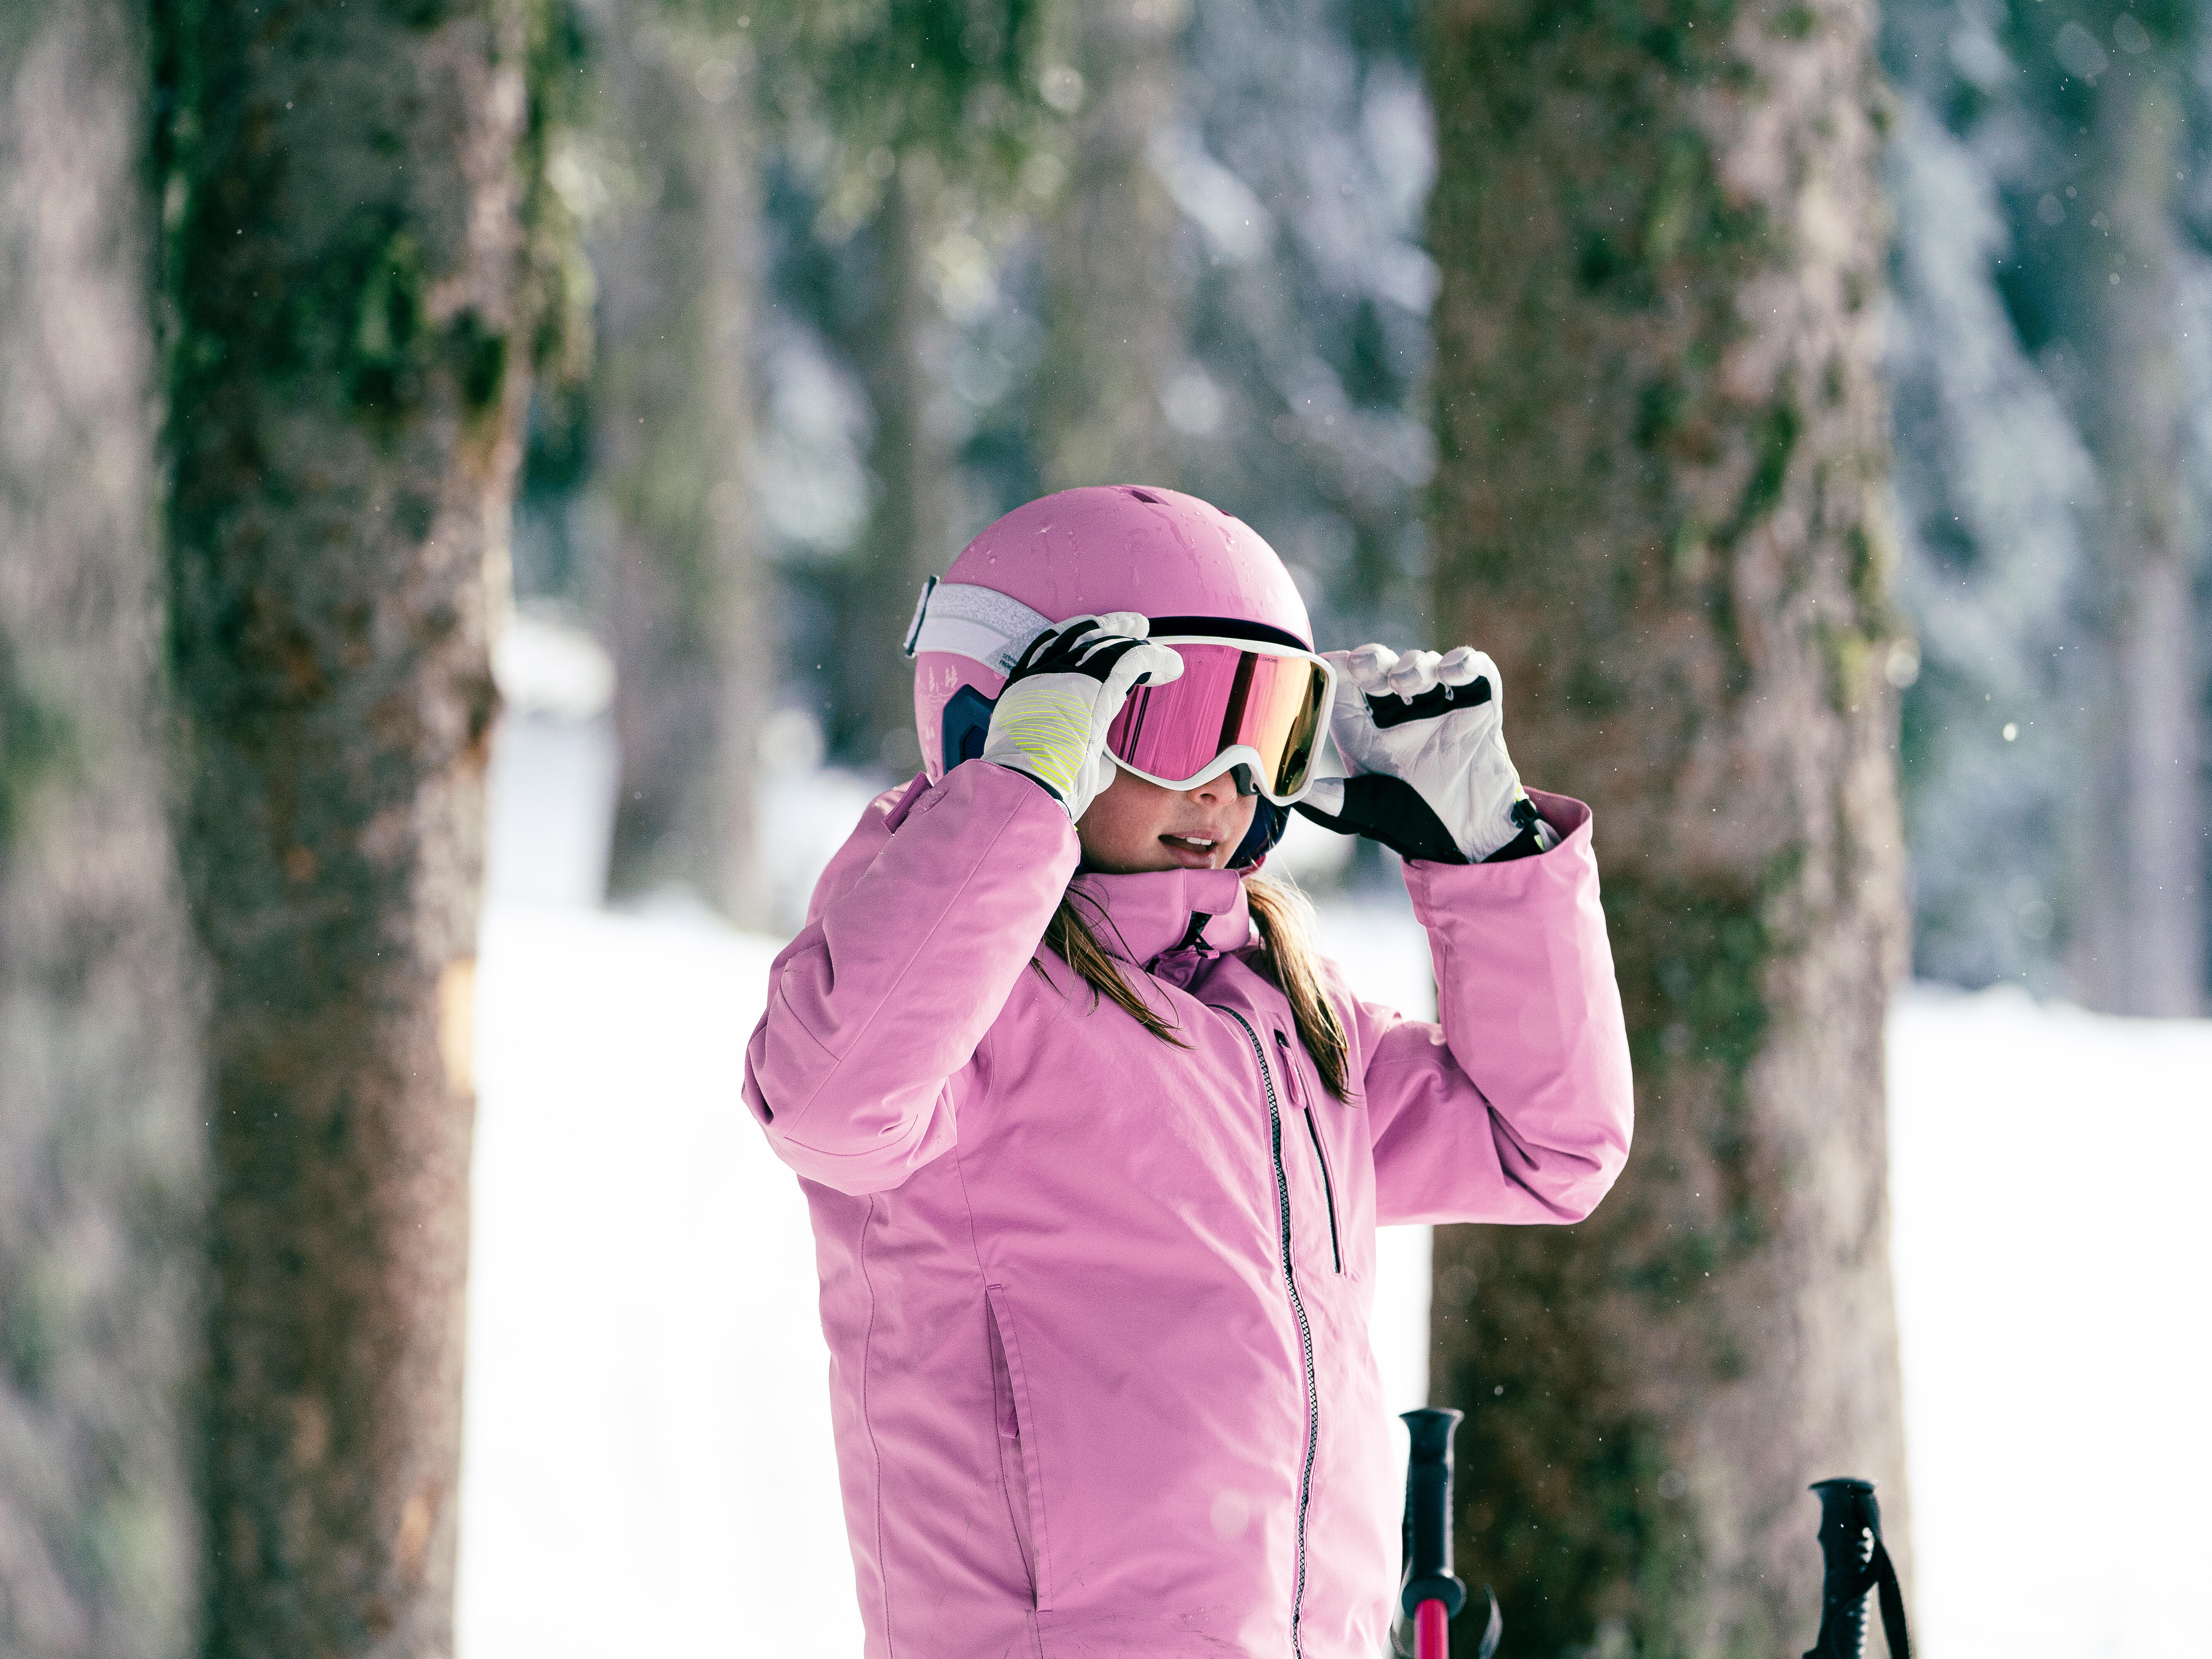 Lunettes de ski, lunettes de neige pour hommes femmes enfants jeunes  adultes, lunettes de snowboard de protection UV pour garçons filles, 2 pack